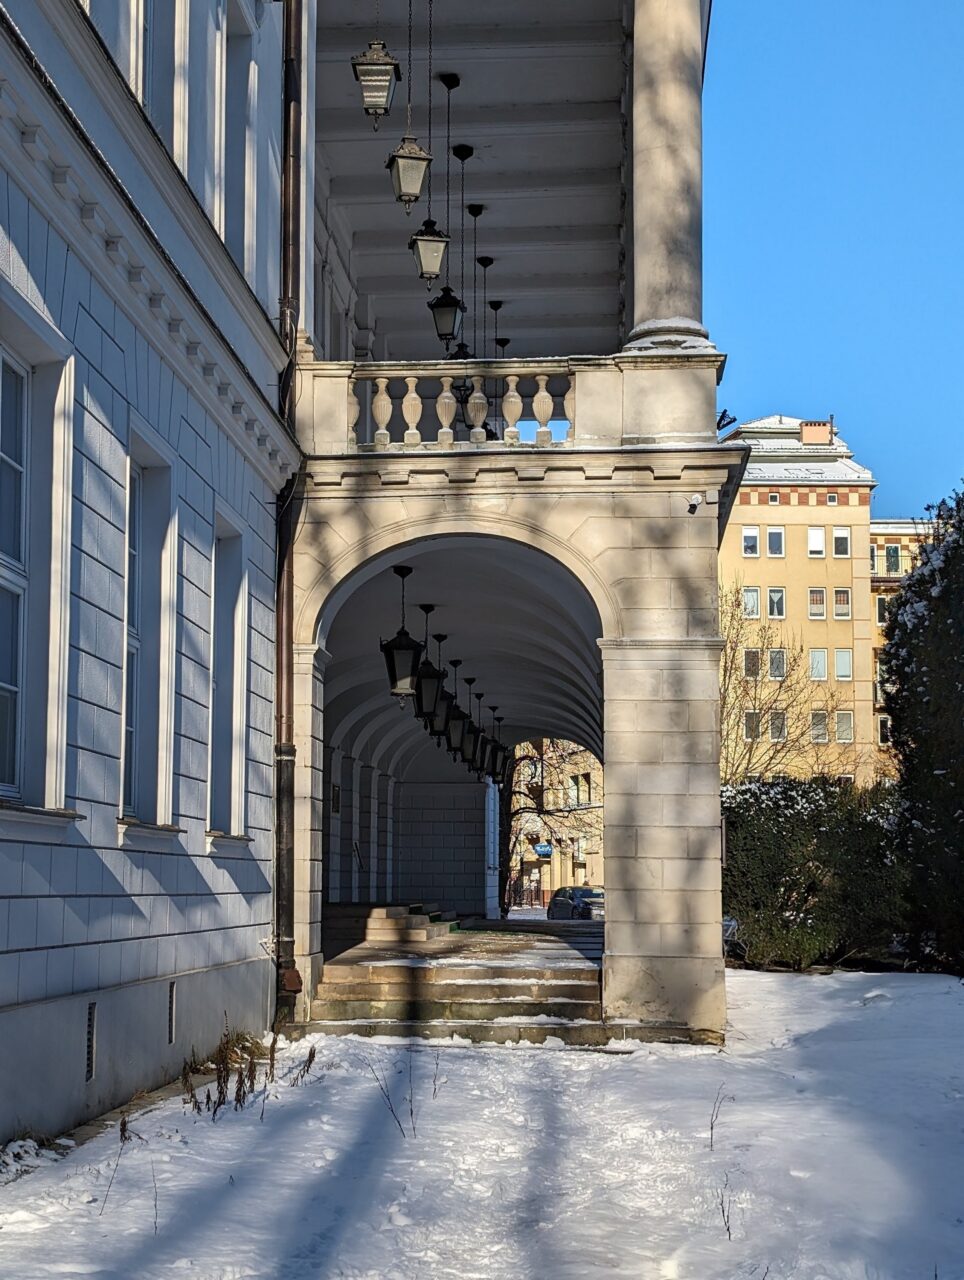 Arkadowy korytarz z klasycznymi latarniami przylegający do białego budynku z widokiem na pokrytą śniegiem ulicę i zabudowania miejskie w tle przy słonecznym dniu.